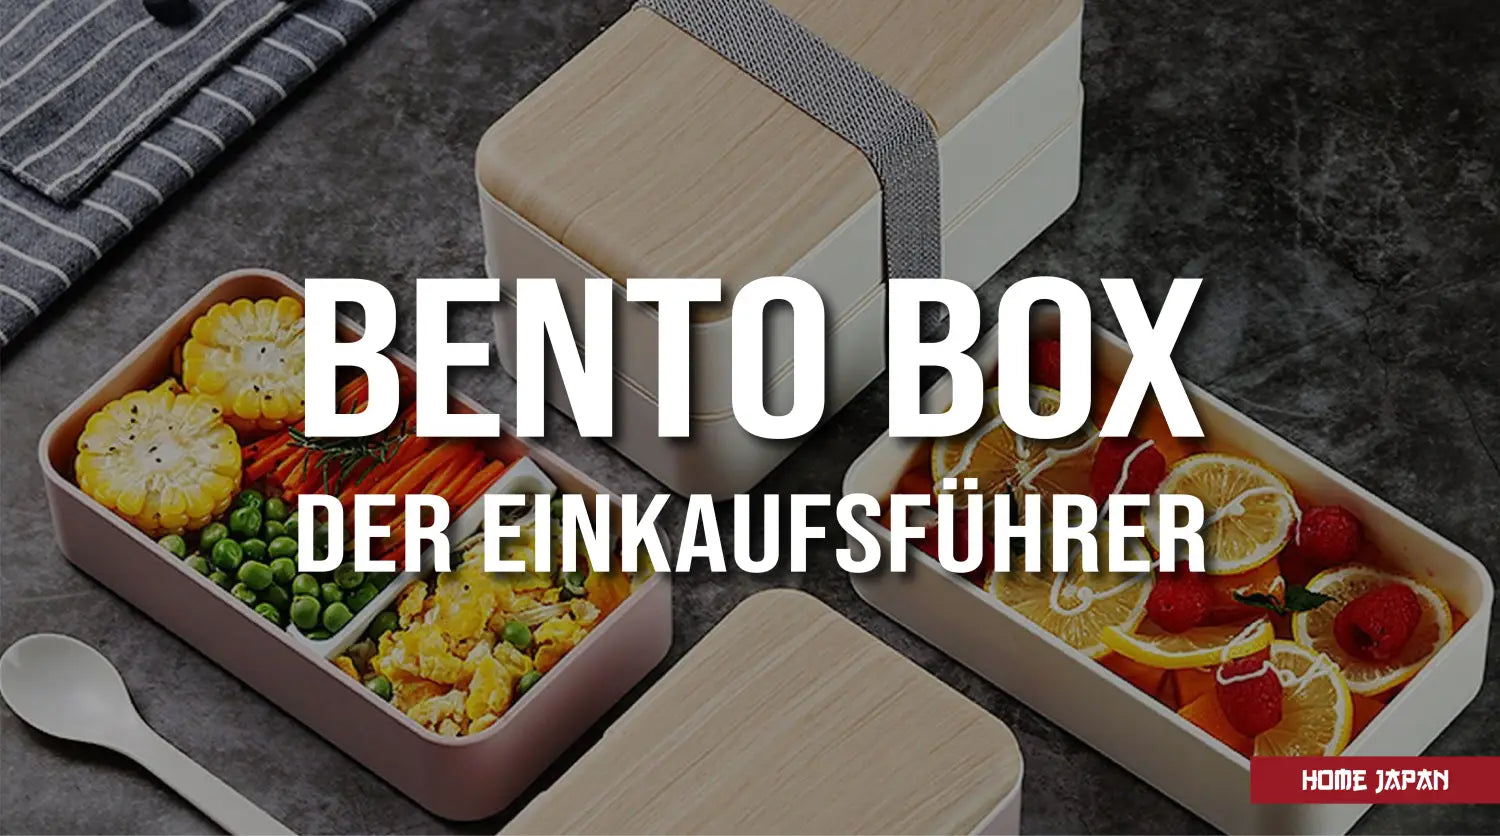 Der Einkaufsführer für die Wahl einer Bento-Box